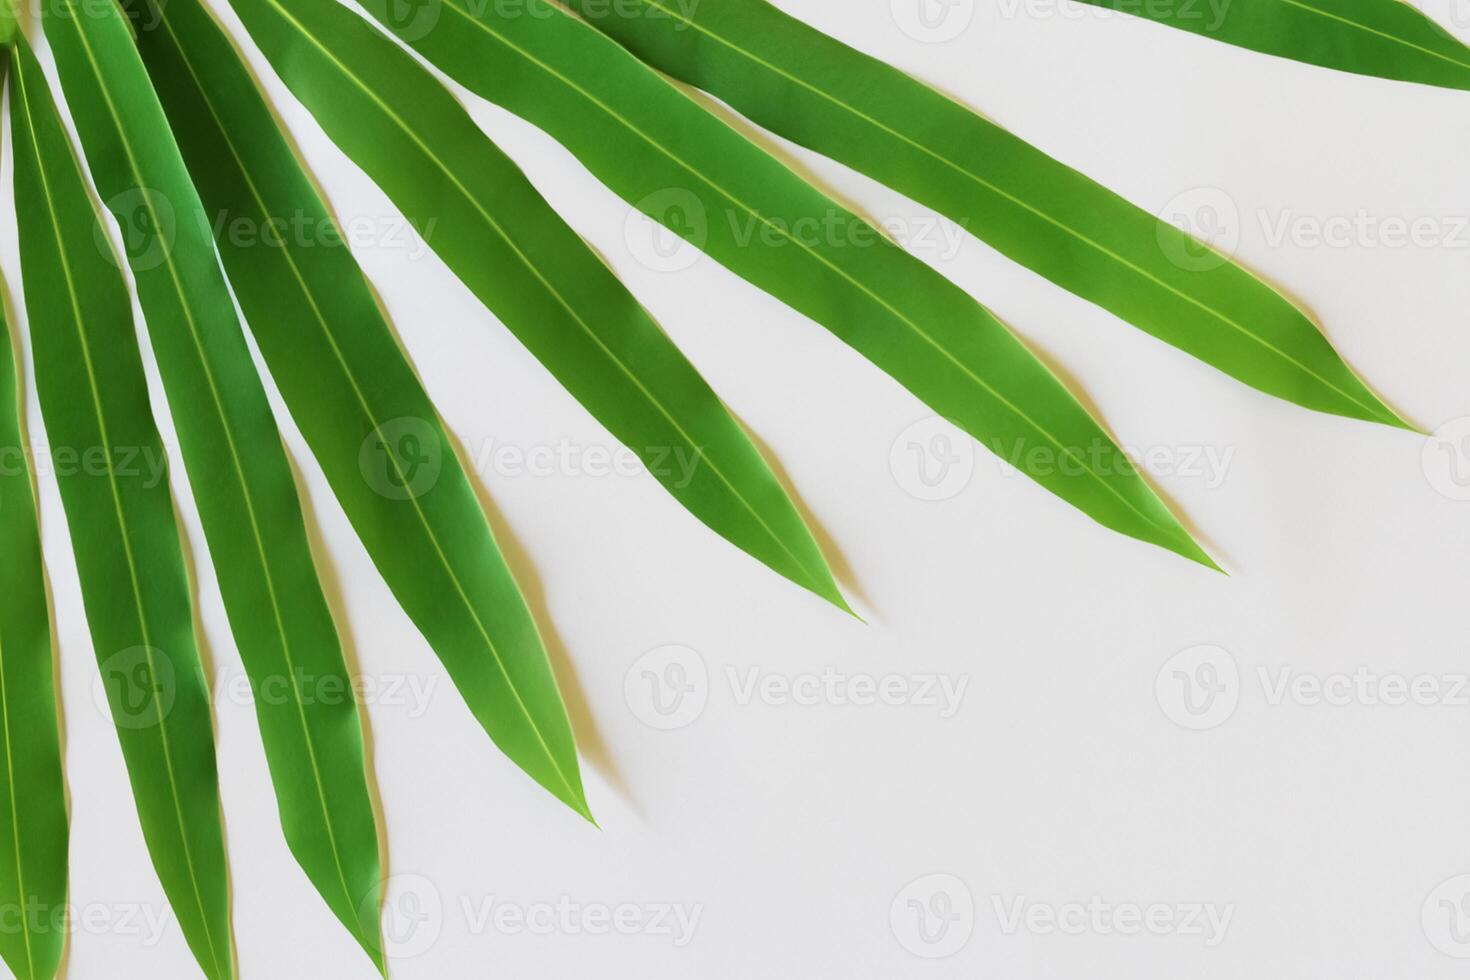 en kulinariska odyssey med de skön pandan blad, infusion delikat aromer och vibrerande grön nyanser in i utsökt maträtter, upphöjande smak profiler med naturens färsk elegans foto